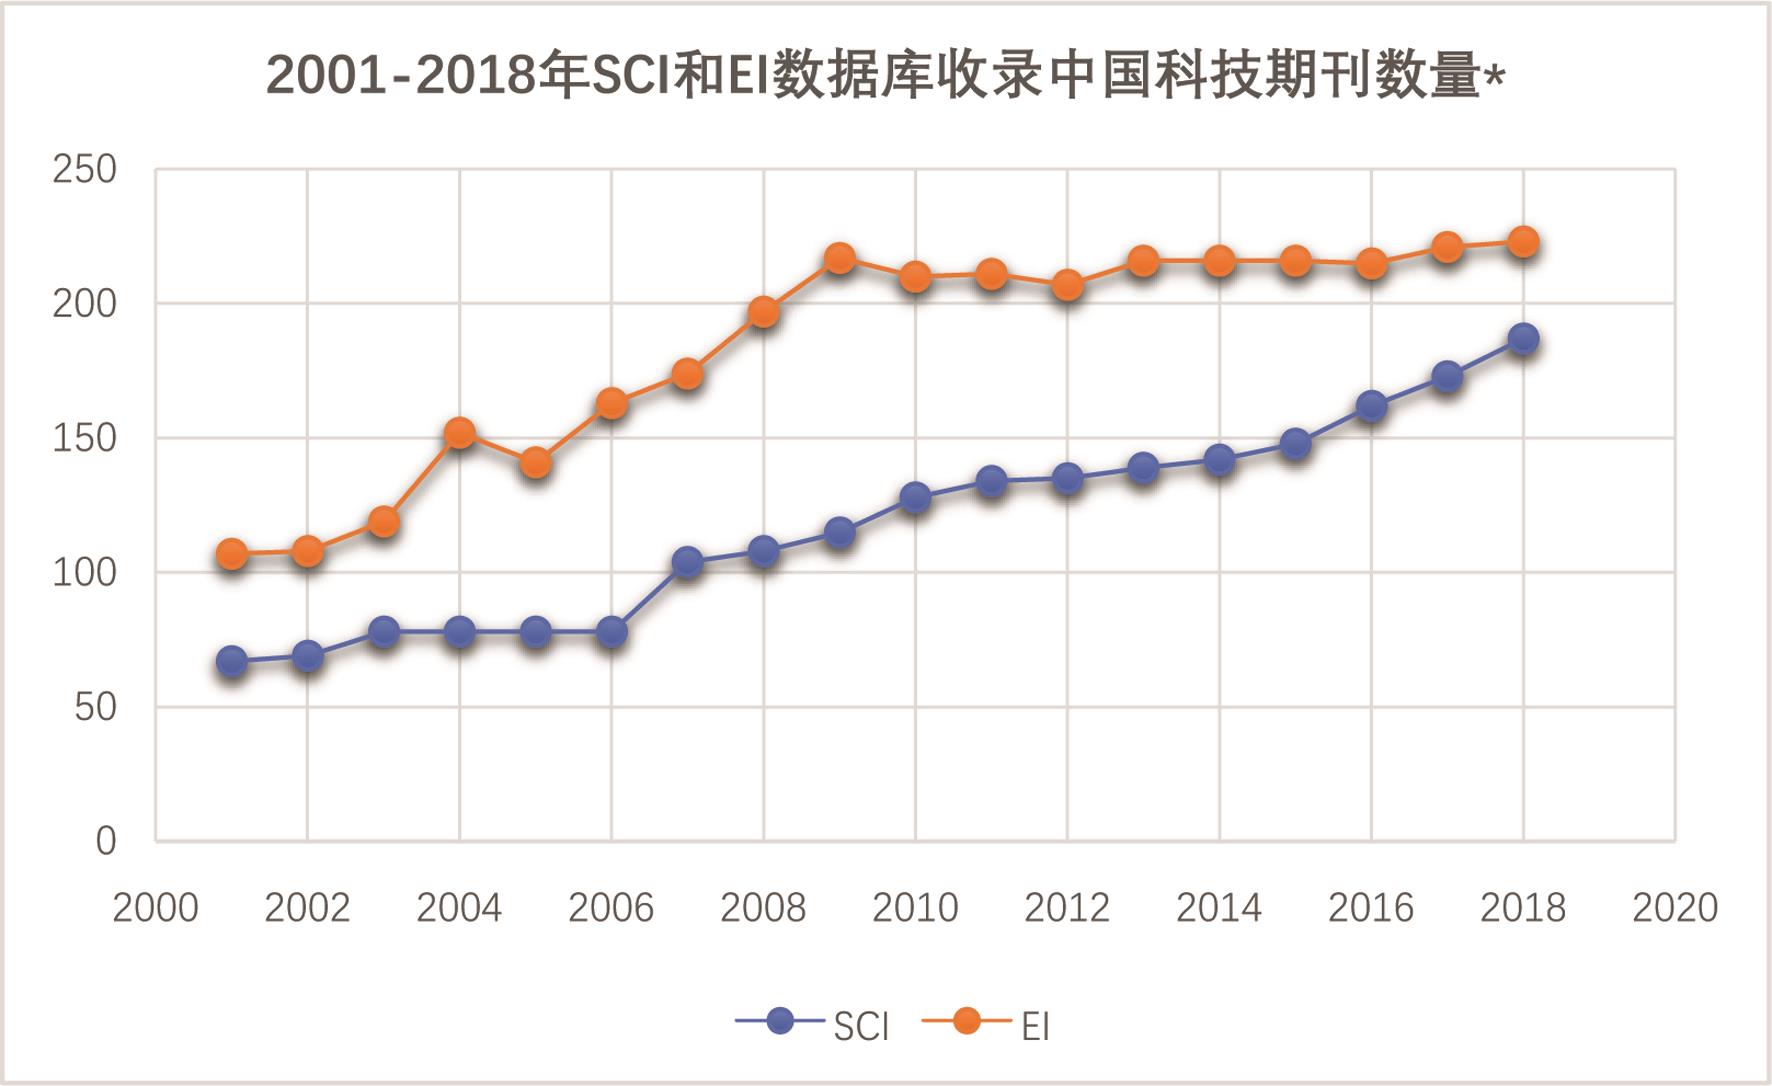 2001-2018年SCI与EI数据库收录中国科技期刊数量变化。